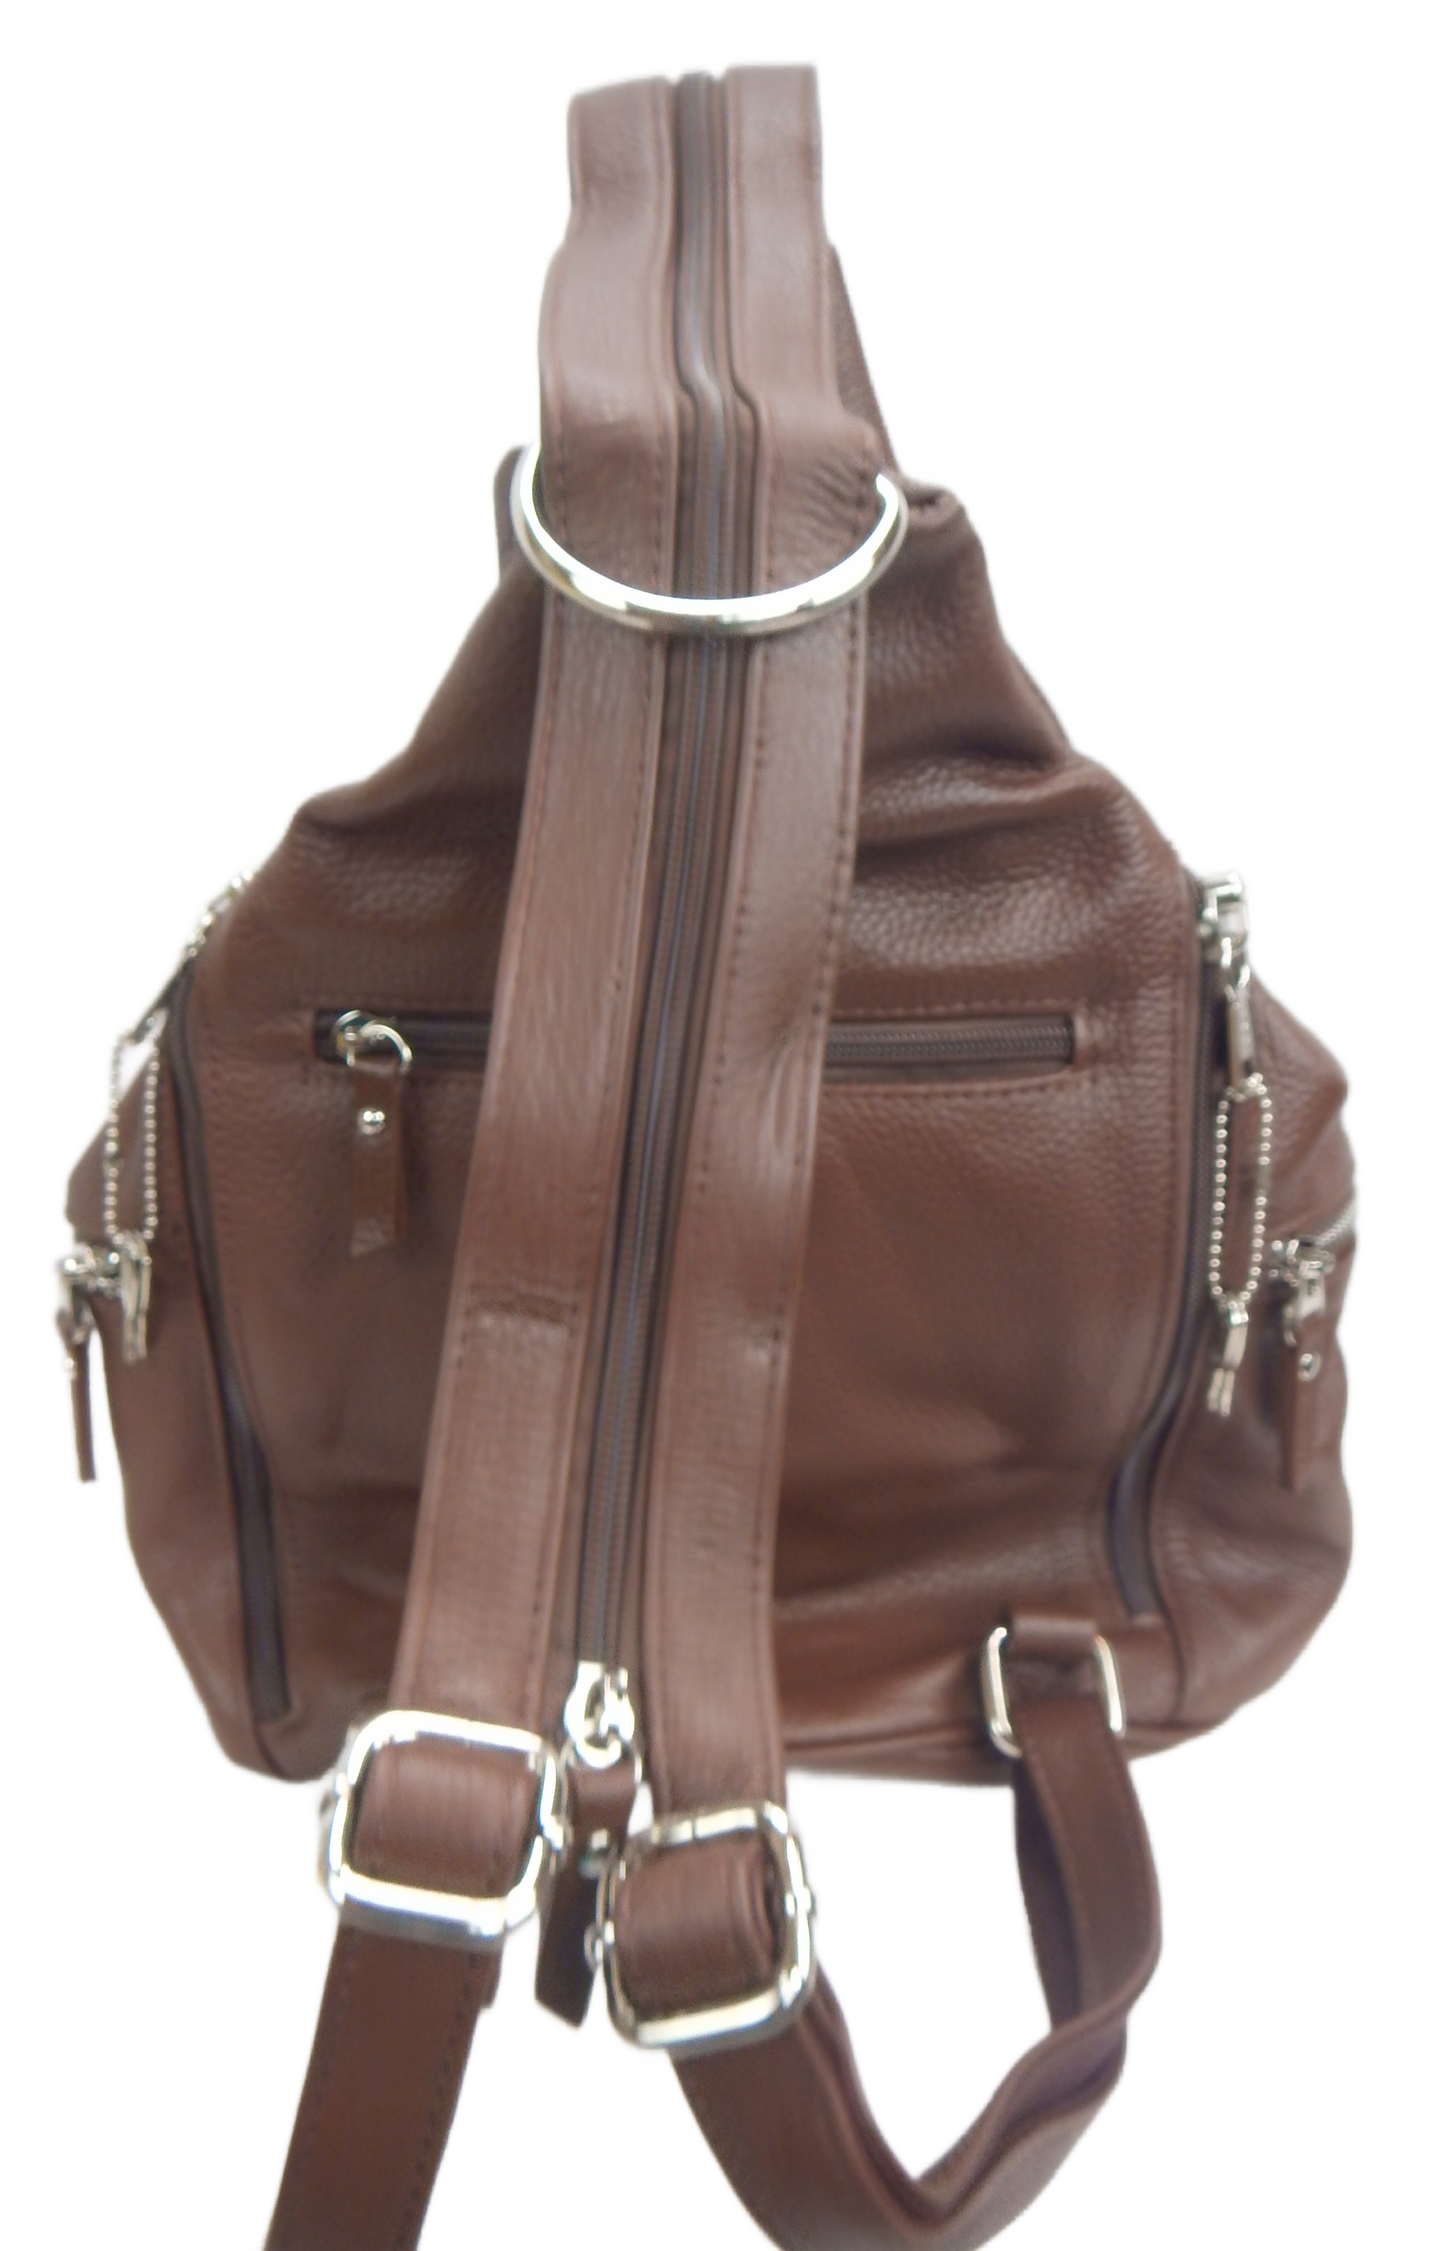 Sling Concealment Backpack